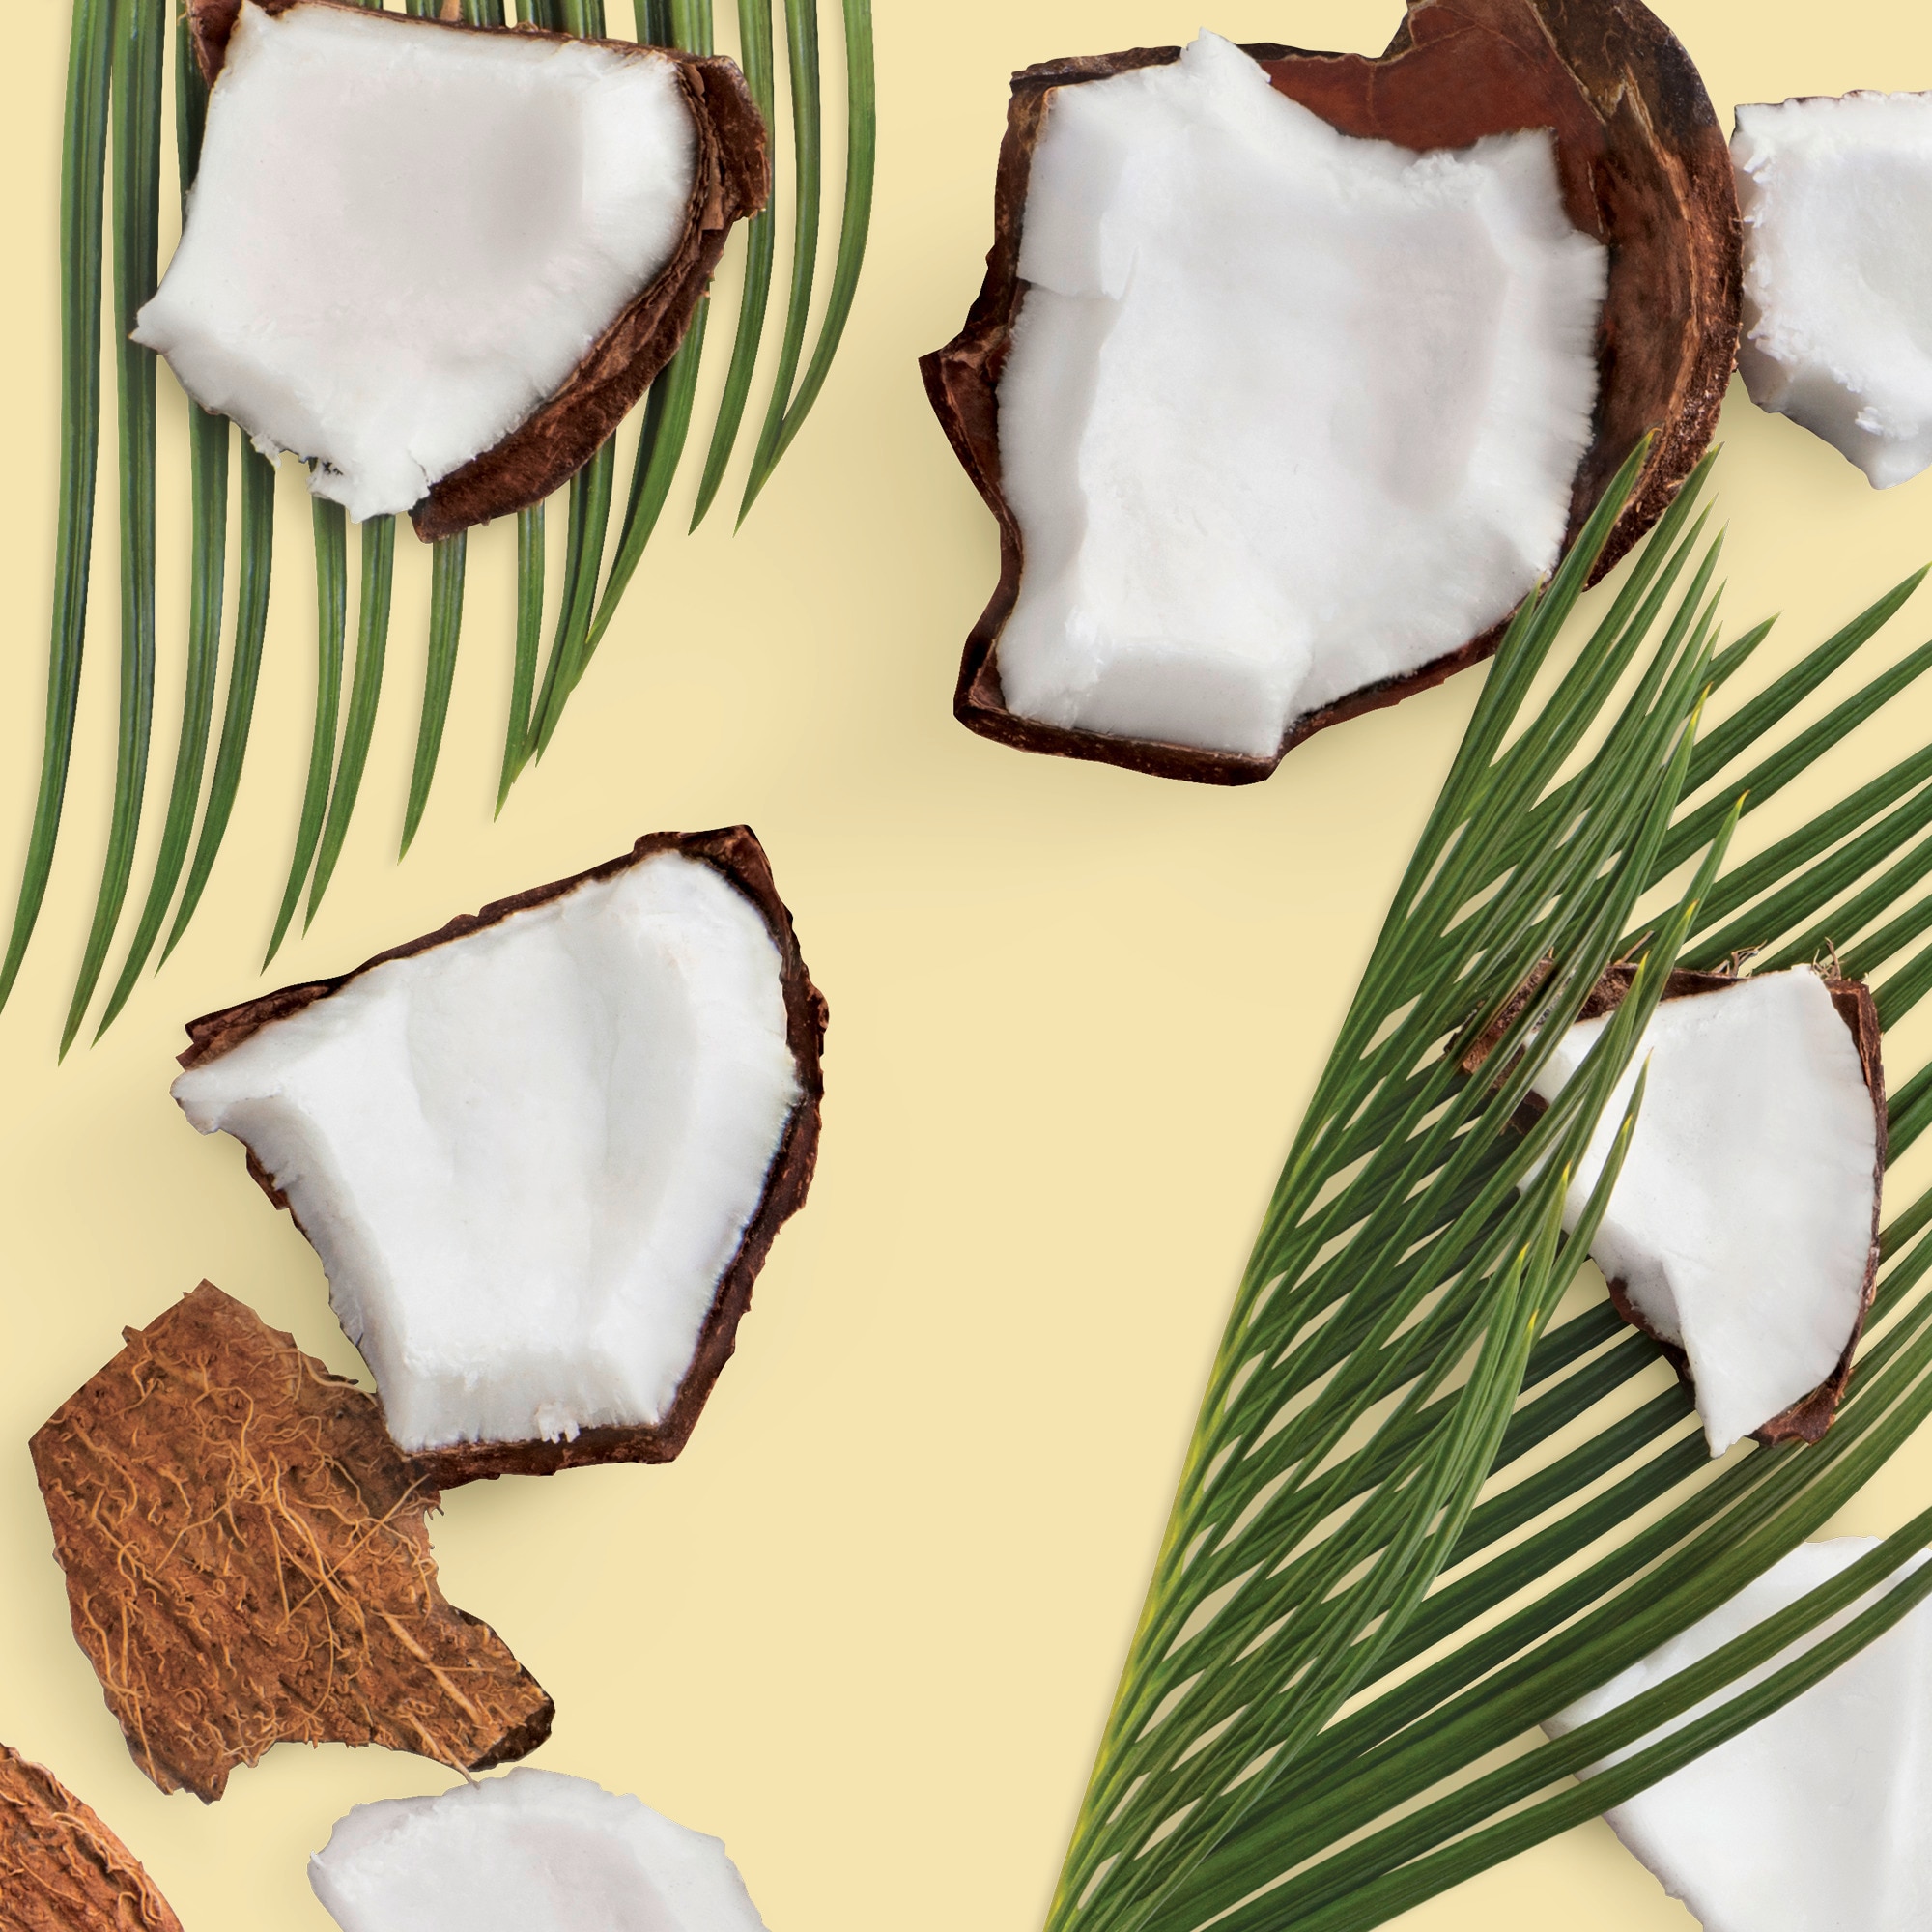 Coconut Oil image